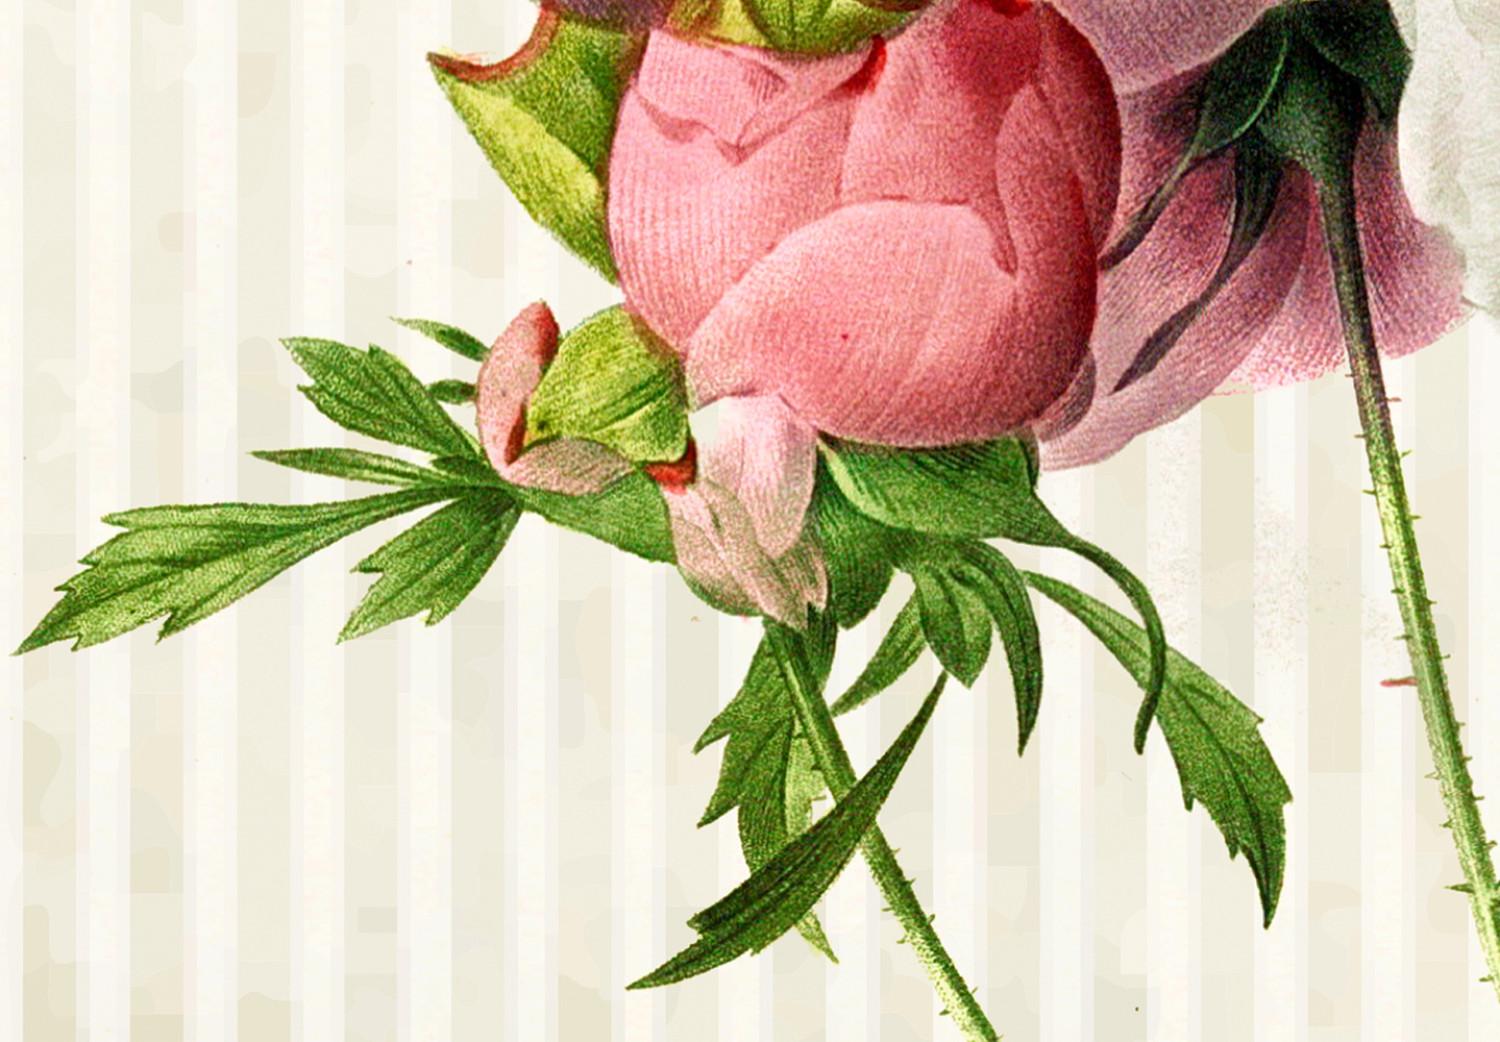 Cuadro Rosas Coloridas (1 pieza) - Inspiración Floral Retro en Colores Vivos